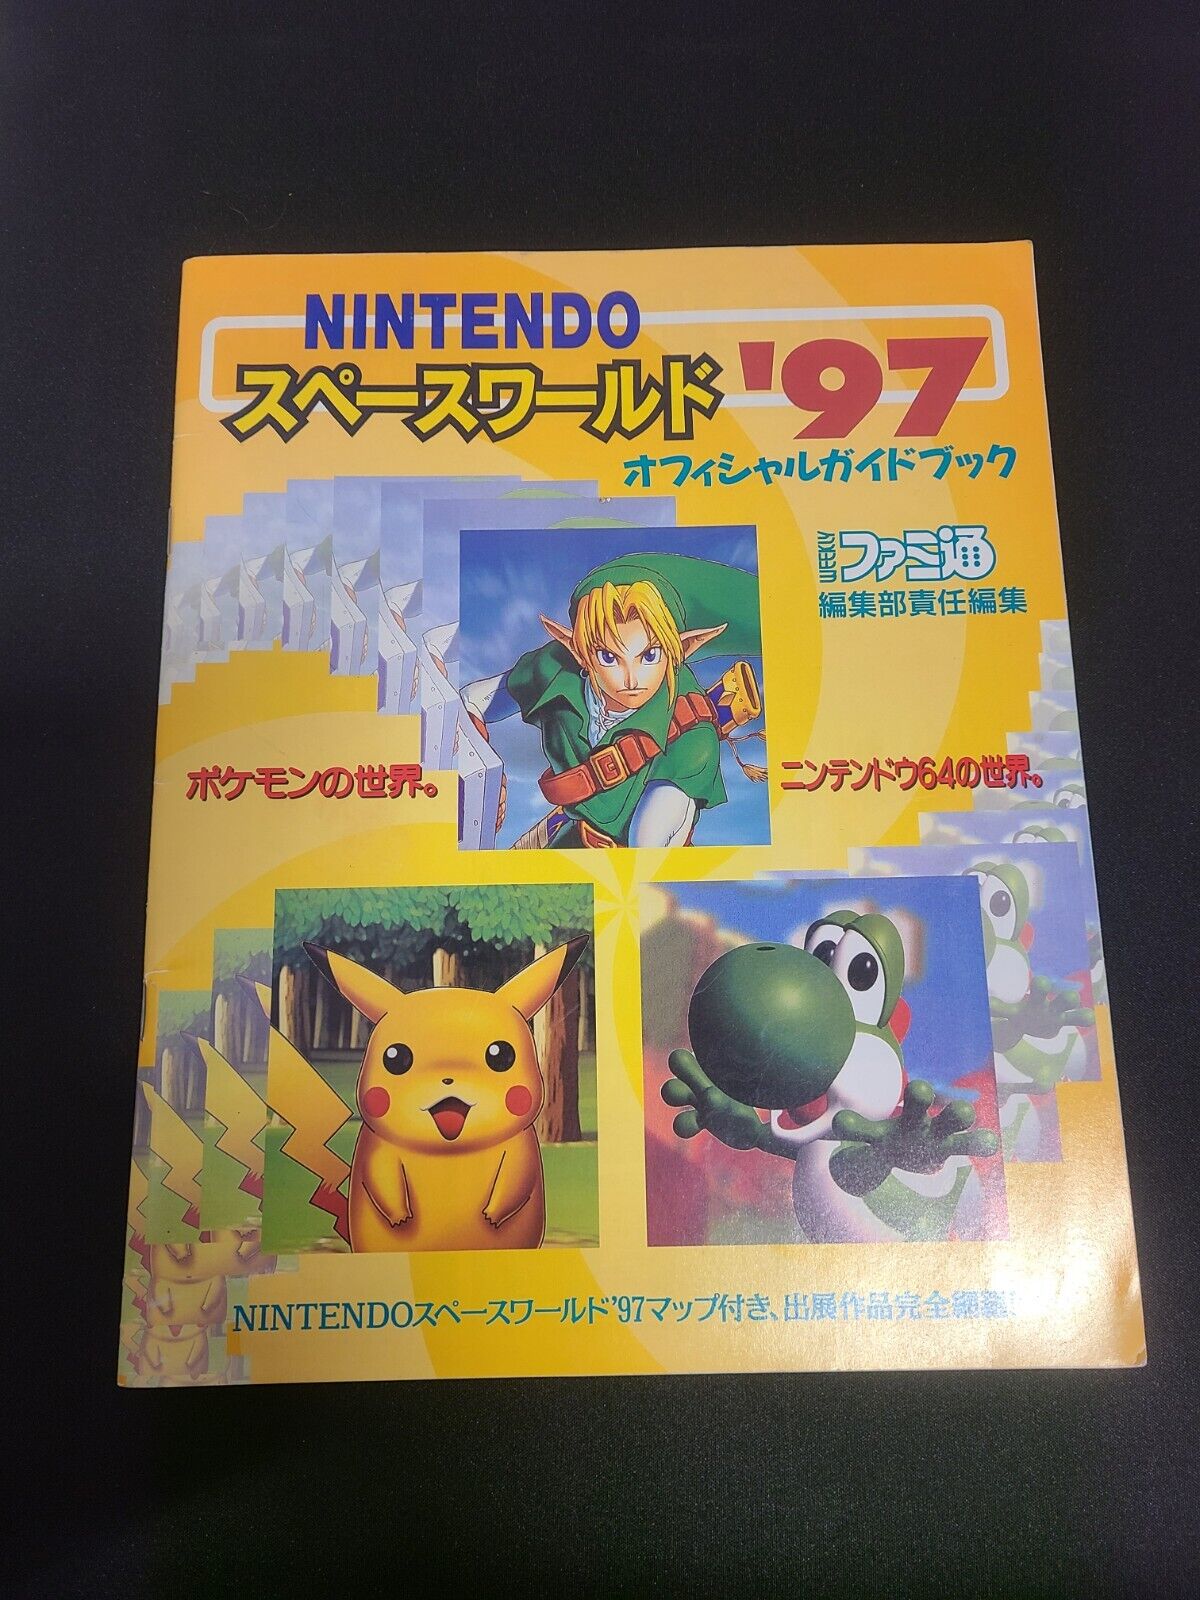 1997 Nintendo Space World Official Guide Book Demo Pokemon Gold & Silver, Zelda